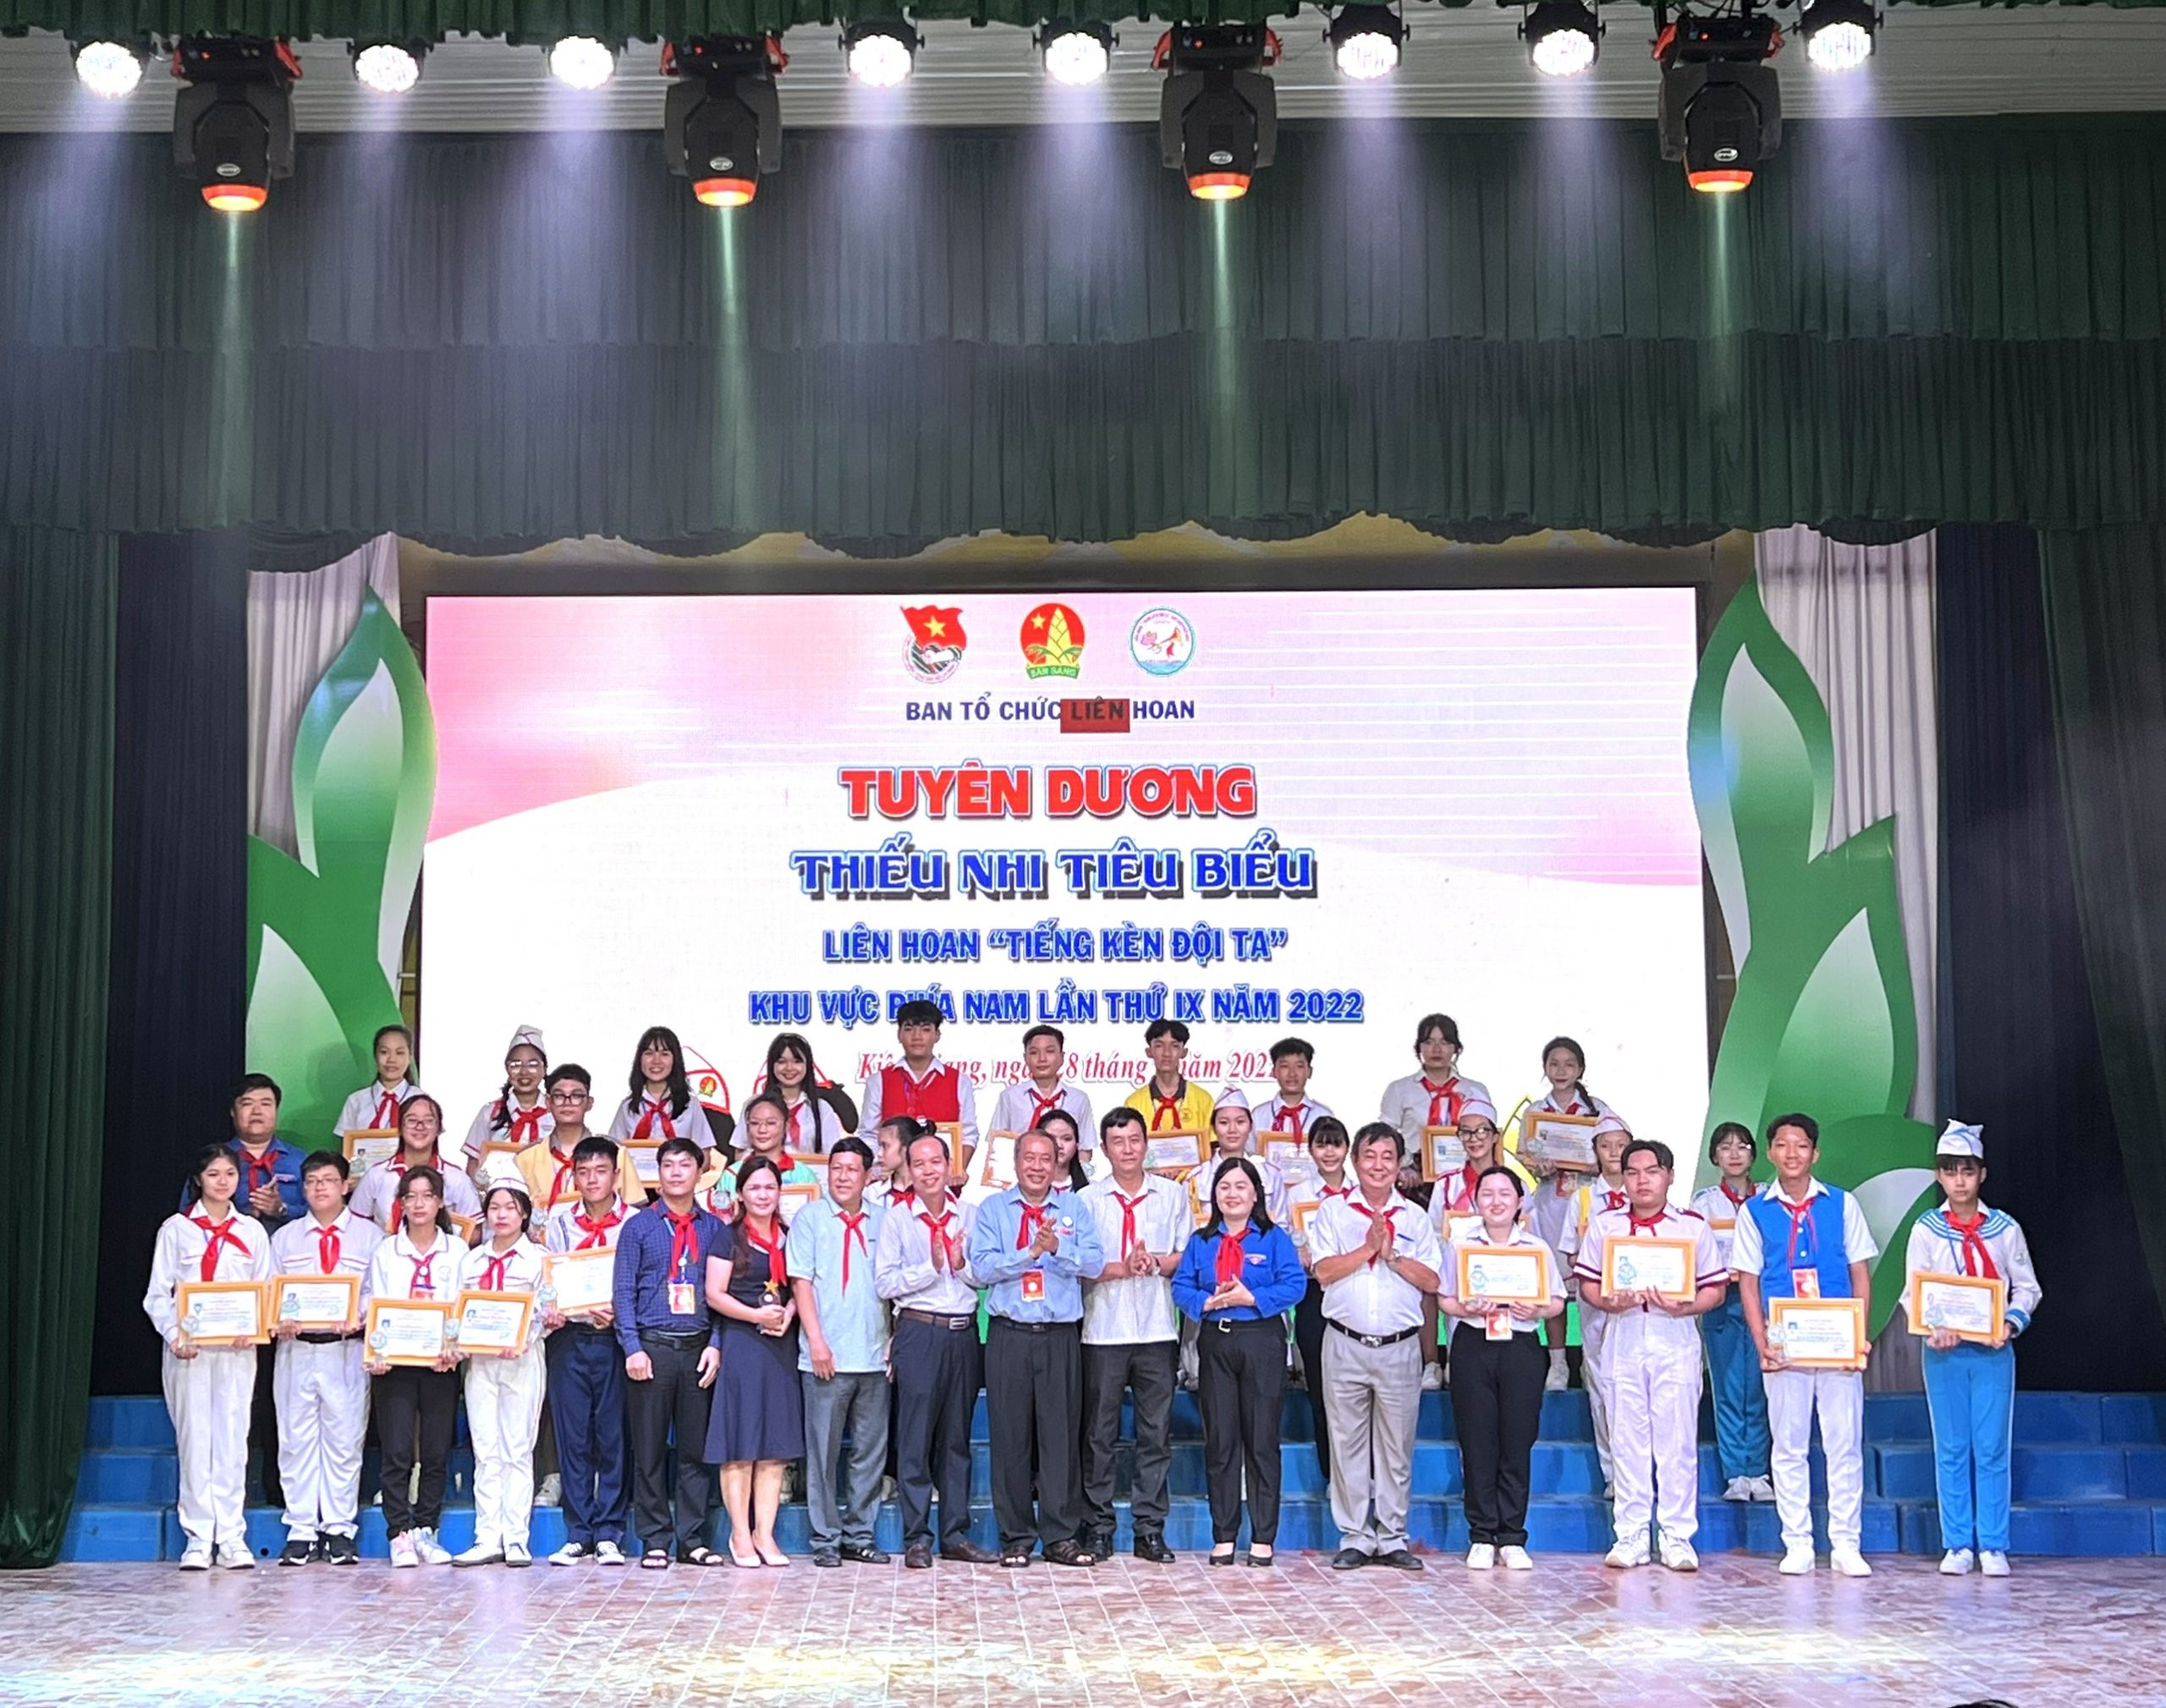 Tham gia Liên hoan “Tiếng kèn Đội ta” các Cung, Nhà thiếu nhi, Trung tâm hoạt động thanh thiếu nhi khu vực phía Nam lần thứ IX, năm 2022 tại tỉnh Kiên Giang